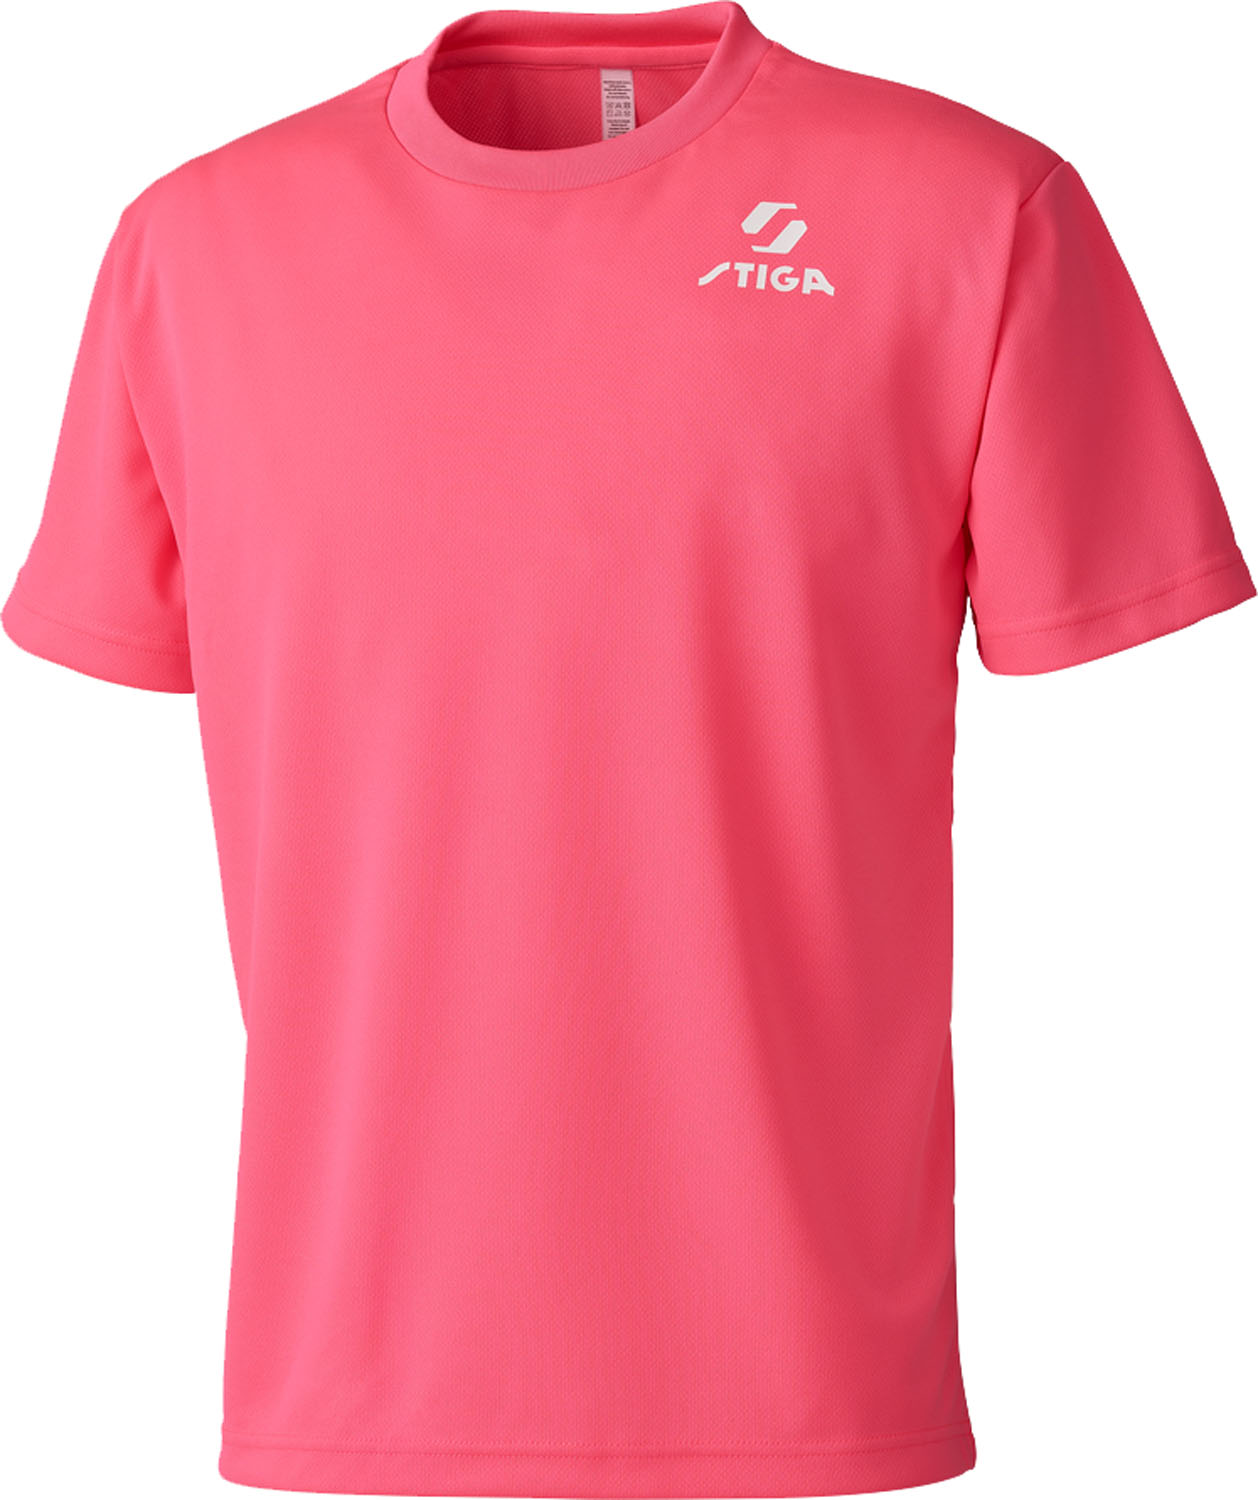 ポリエステル 100%原産国： ベトナムネオンシリーズにピンクが登場。こちらも大会会場で目立ちます ! 男女問わず着られるピンクです。